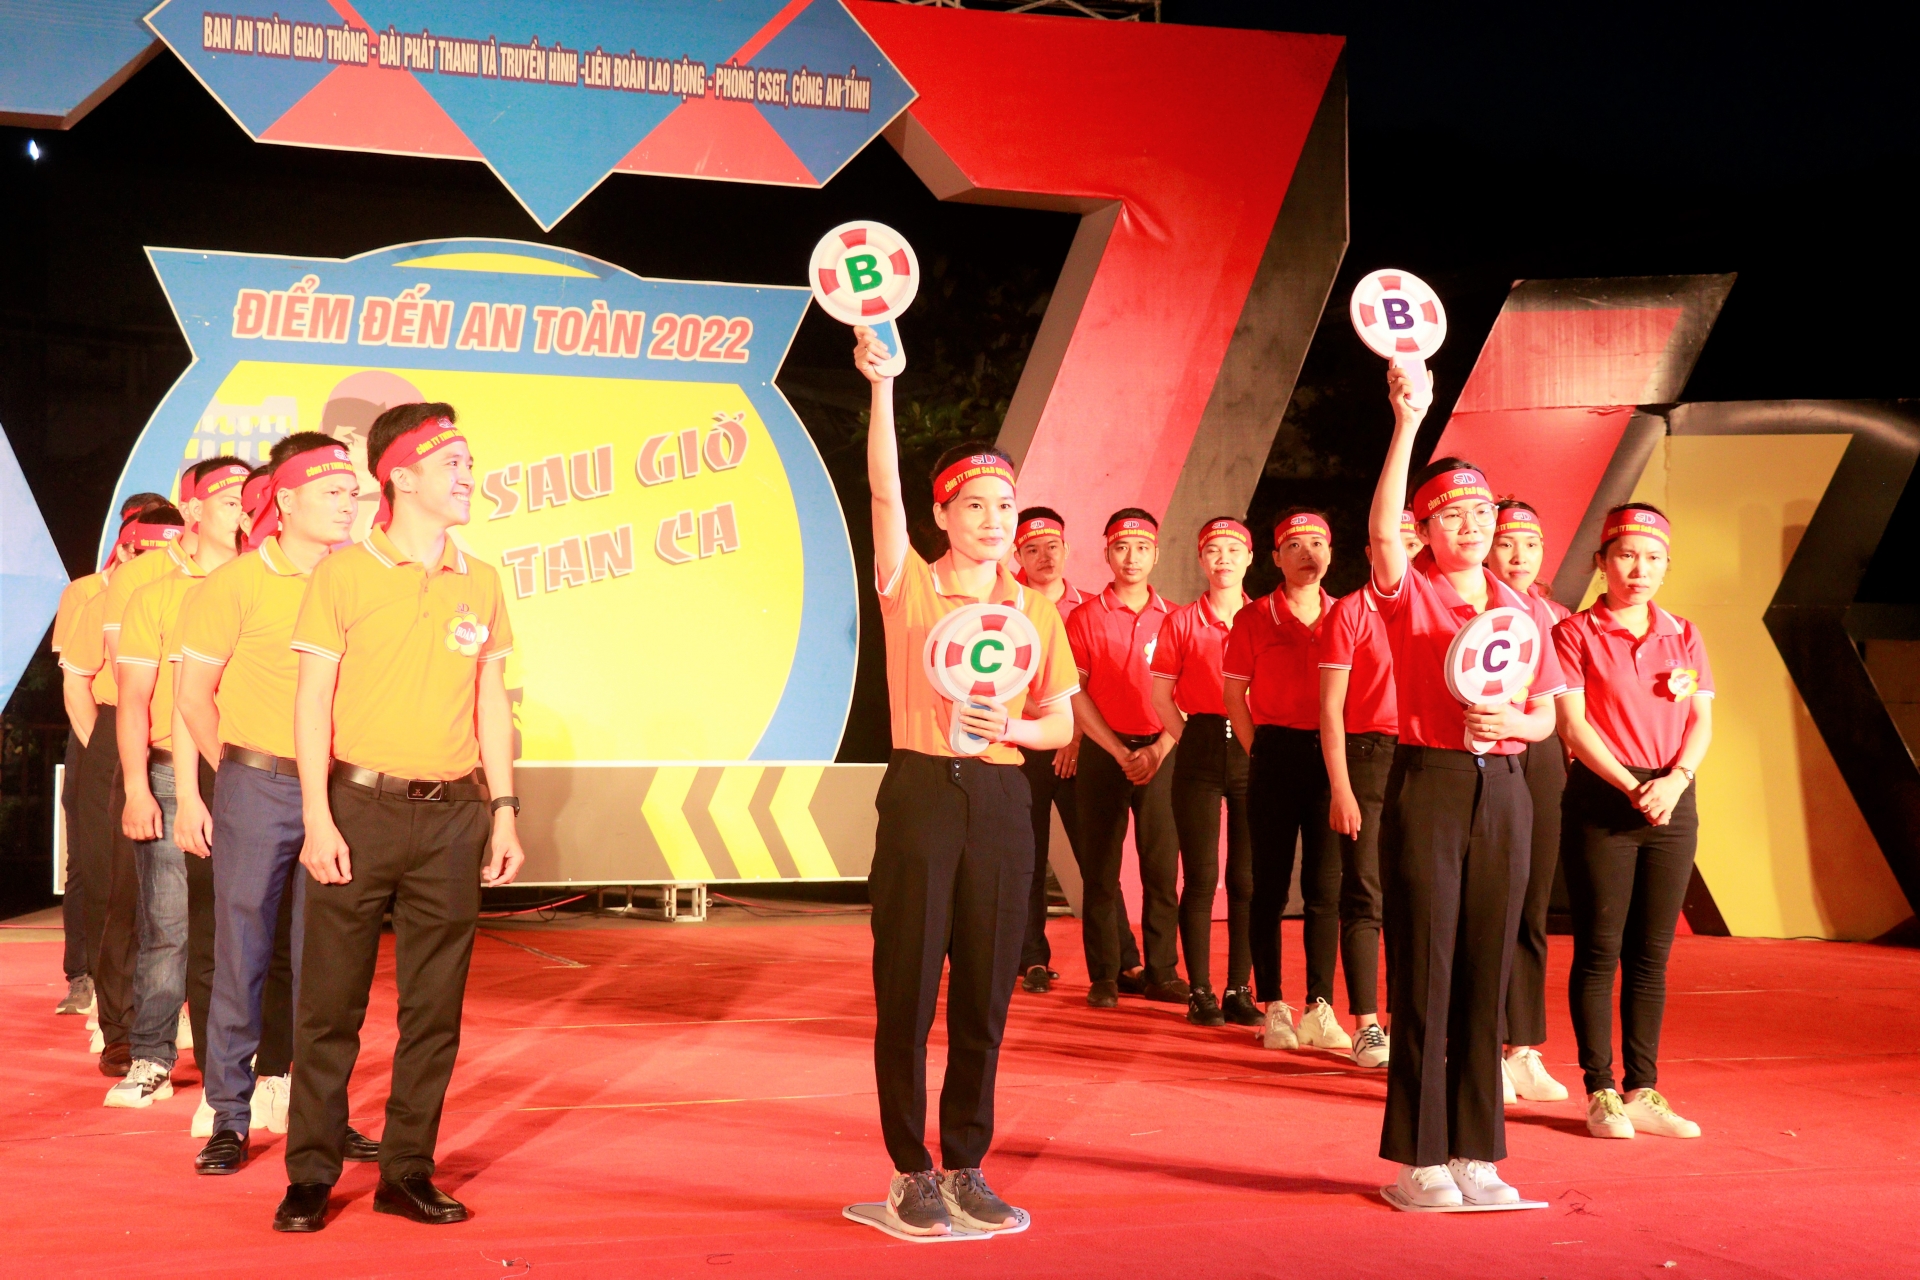 Quảng Bình: Cuộc thi Điểm đến an toàn diễn ra sôi động, bổ ích cho người lao động